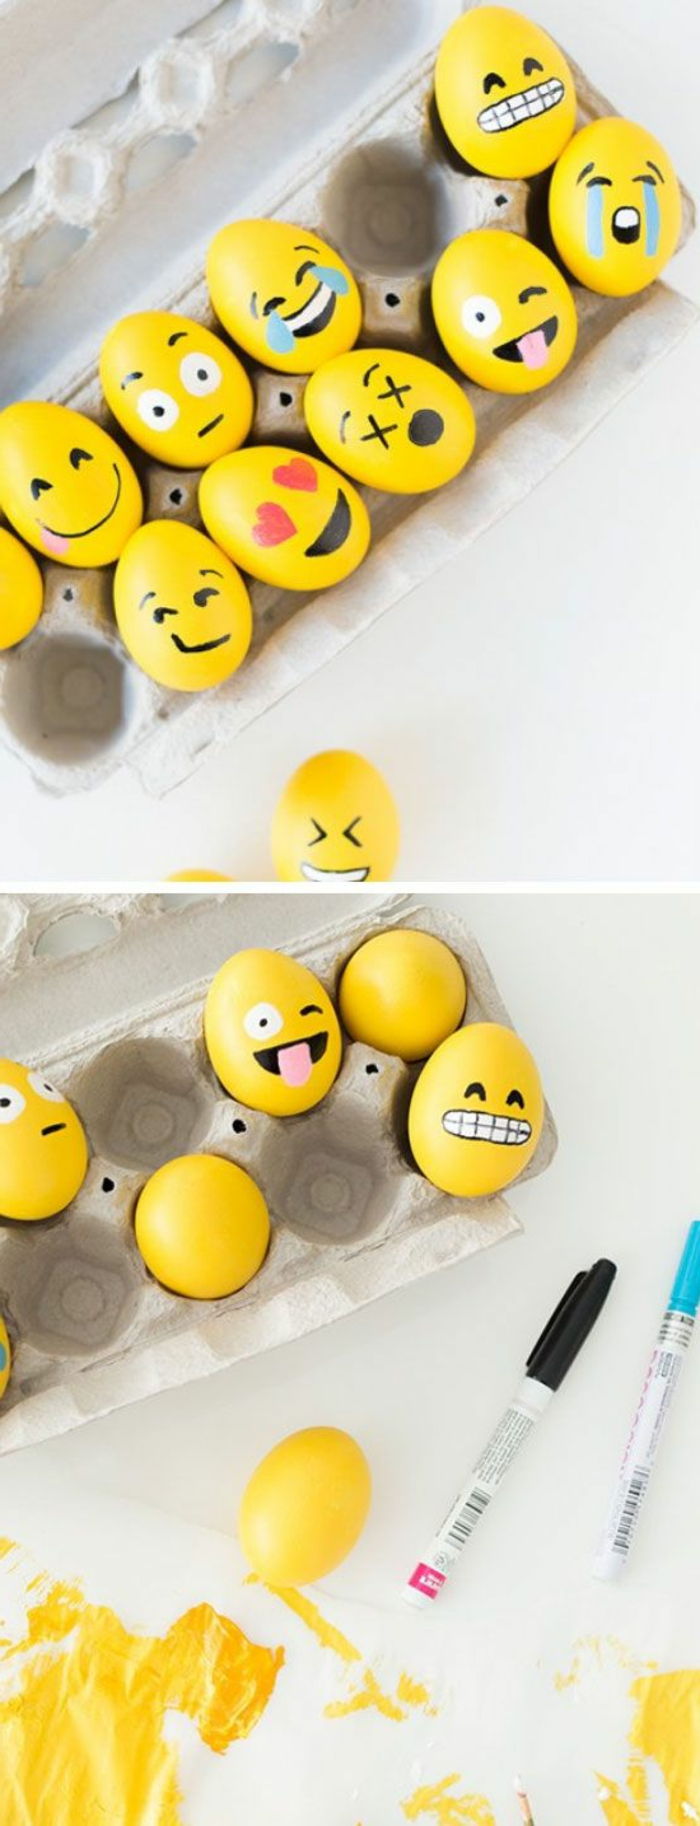 Måla idéer för gula påskägg med emojis - olika utseende